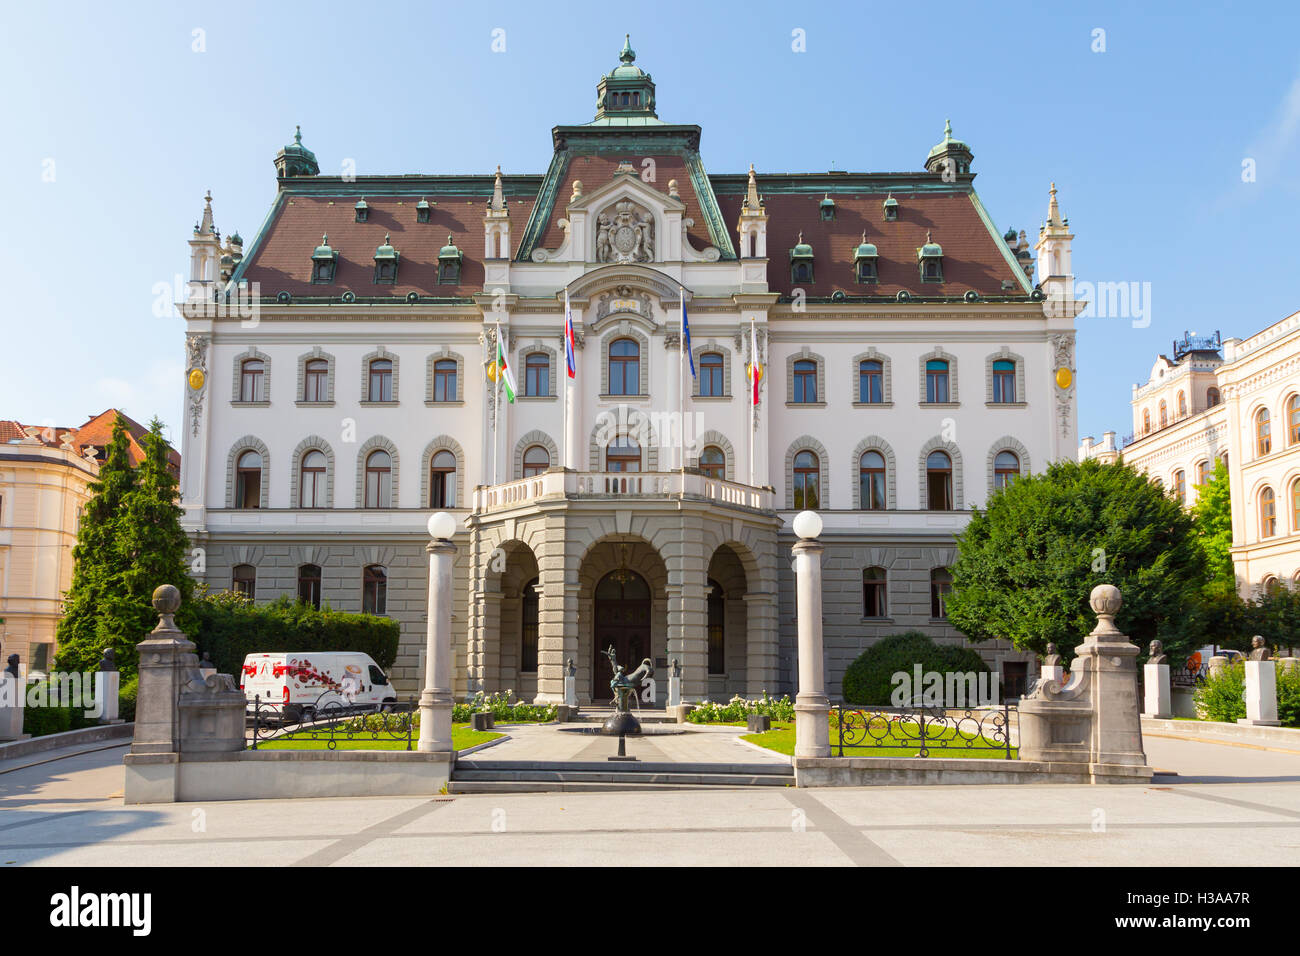 University of Ljubljana, administrative building. Stock Photo